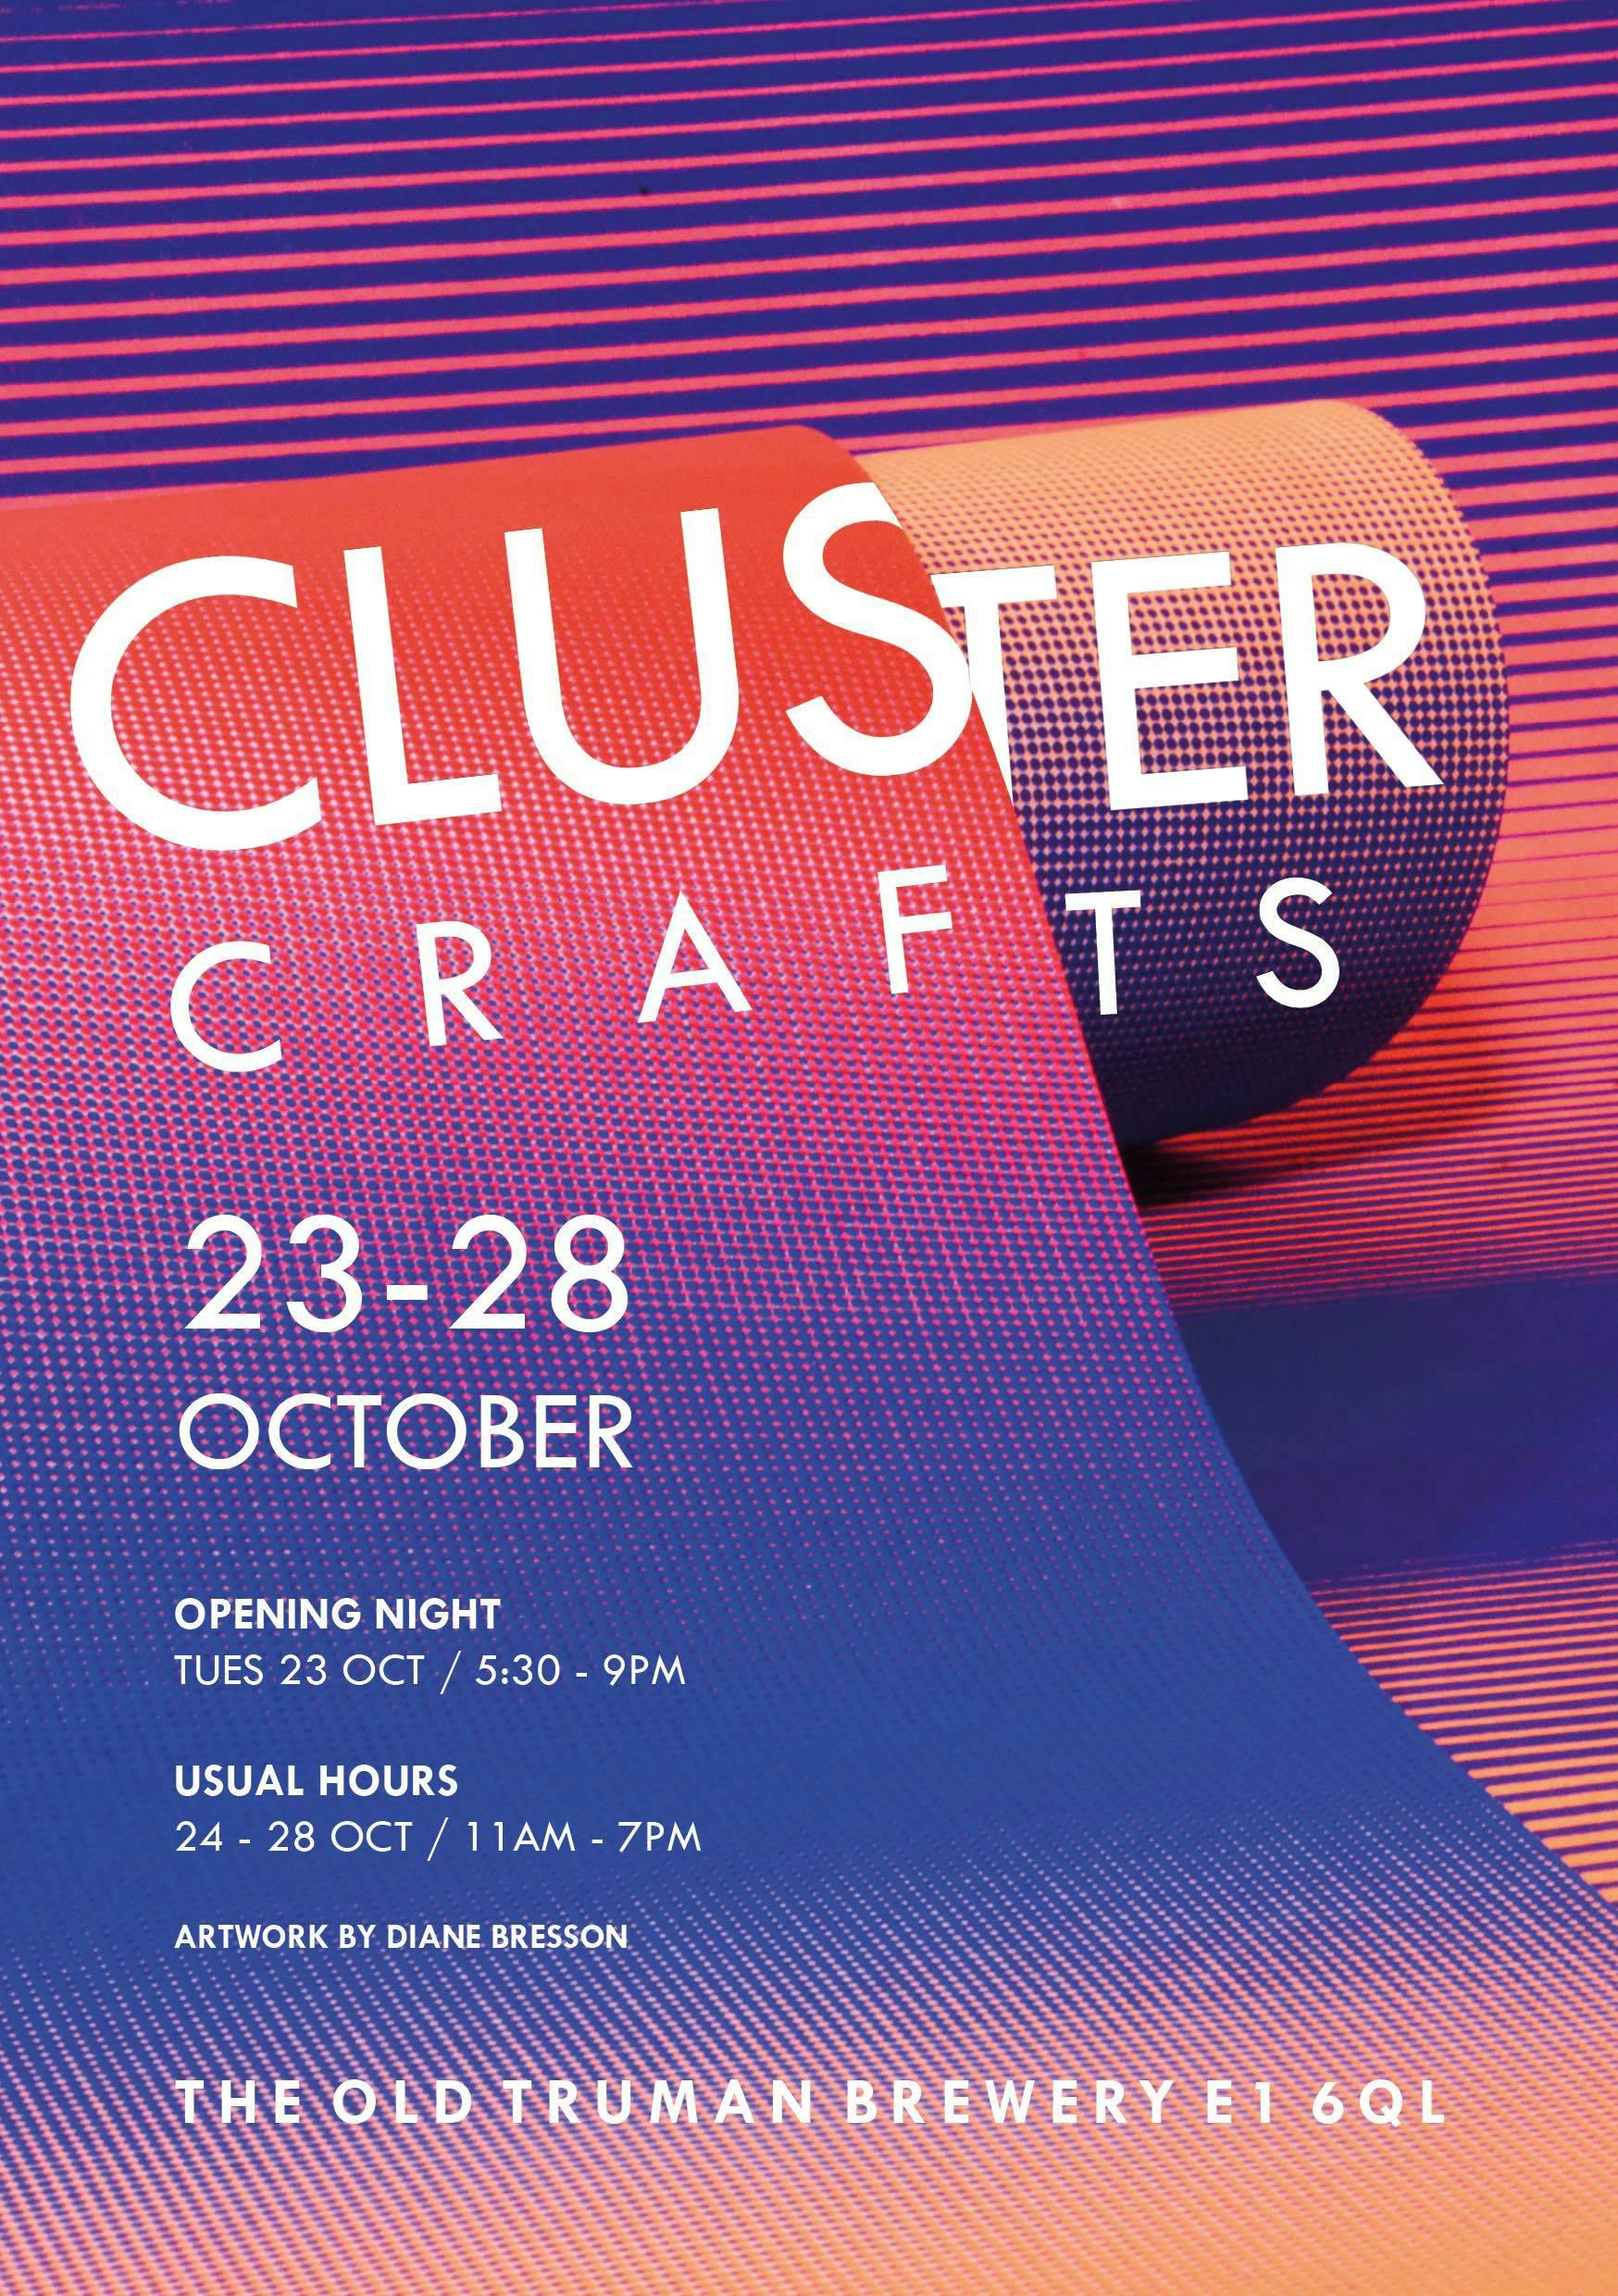 Cluster crafts